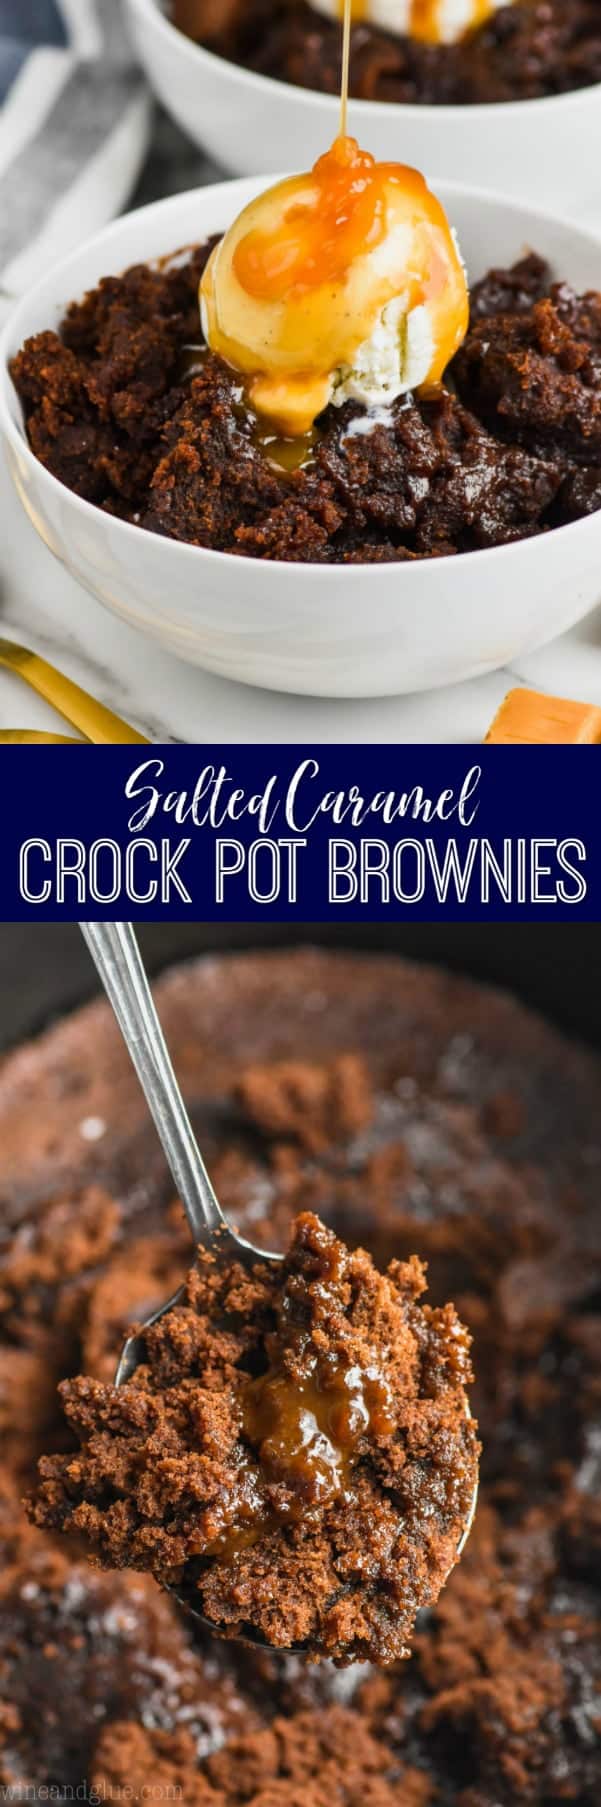 collage of photos of crock pot brownies